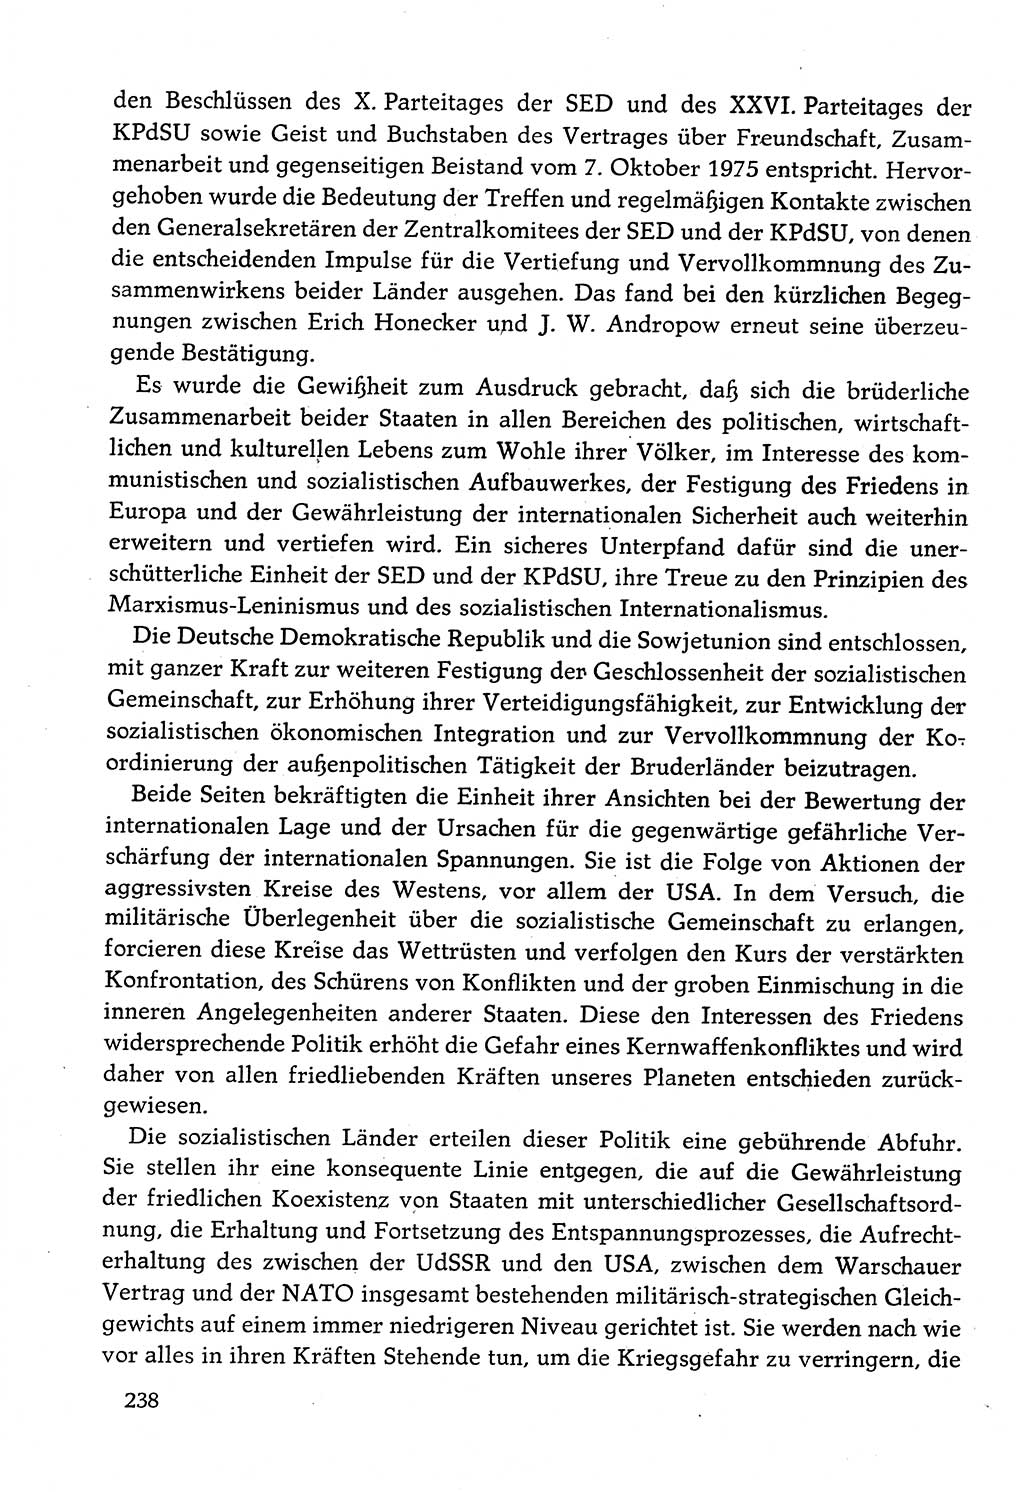 Dokumente der Sozialistischen Einheitspartei Deutschlands (SED) [Deutsche Demokratische Republik (DDR)] 1982-1983, Seite 238 (Dok. SED DDR 1982-1983, S. 238)